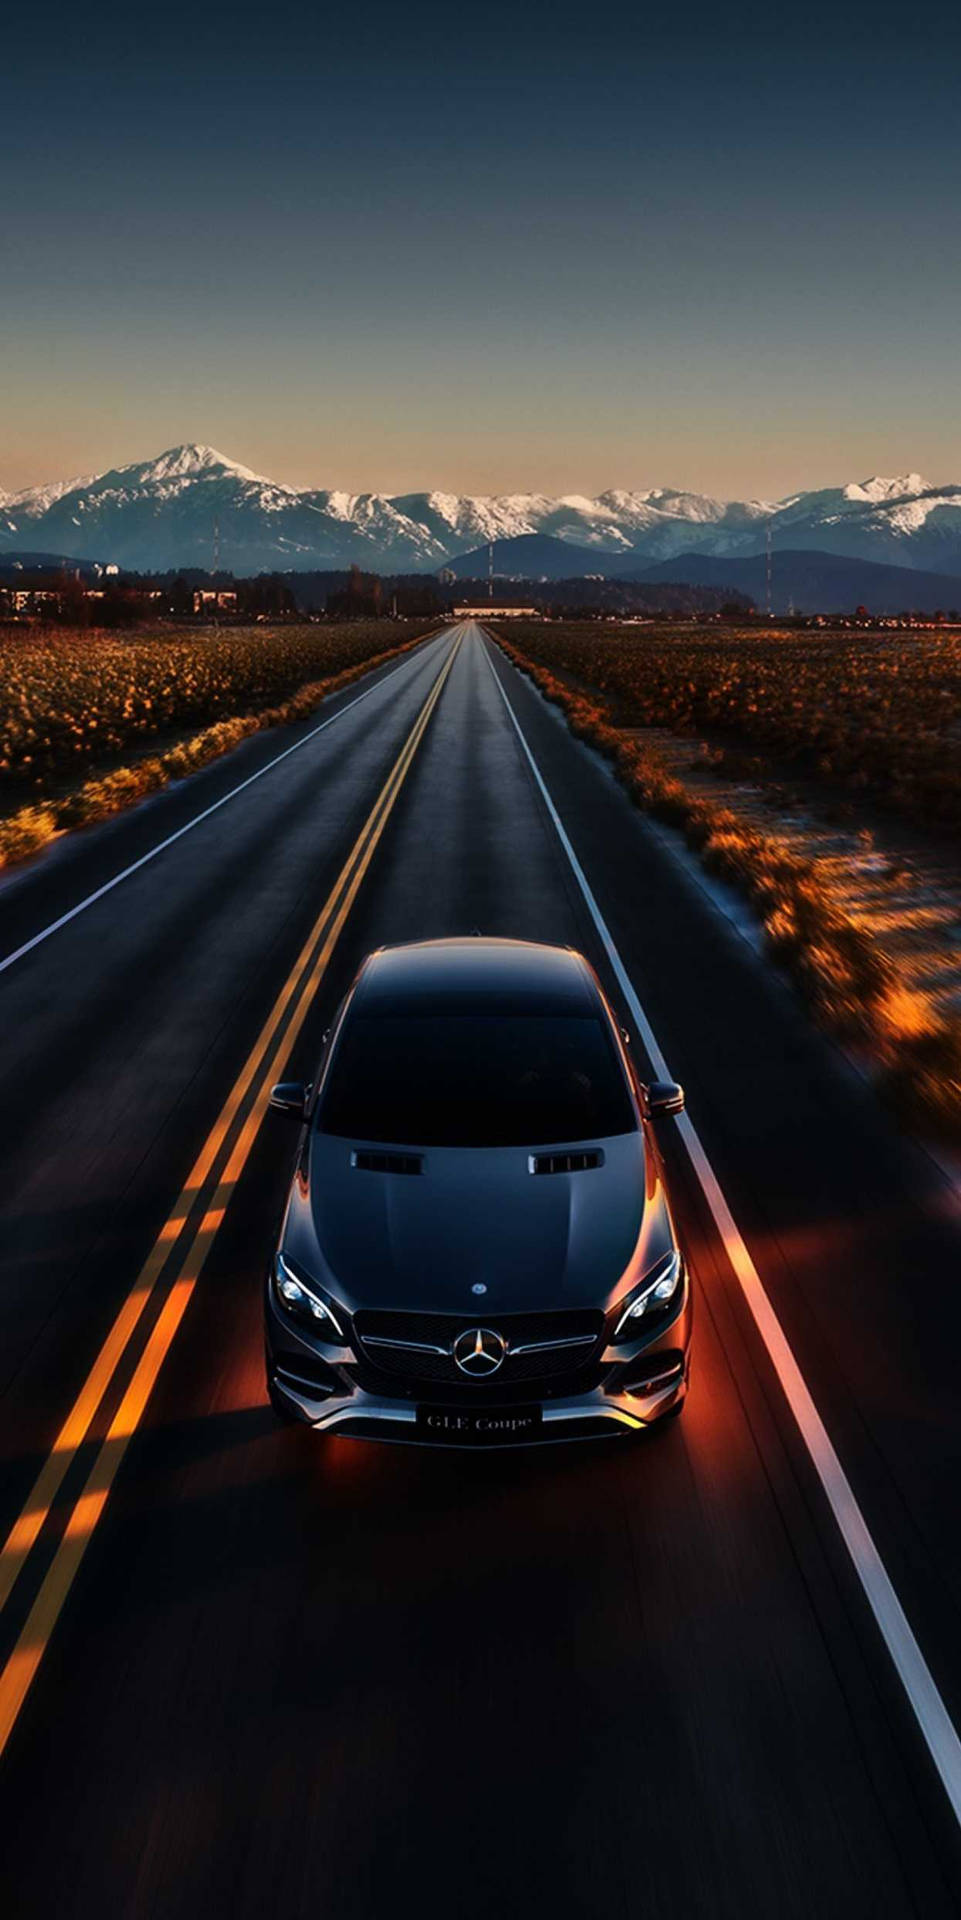 Mercedes Benz På Vejen Iphone Wallpaper Wallpaper